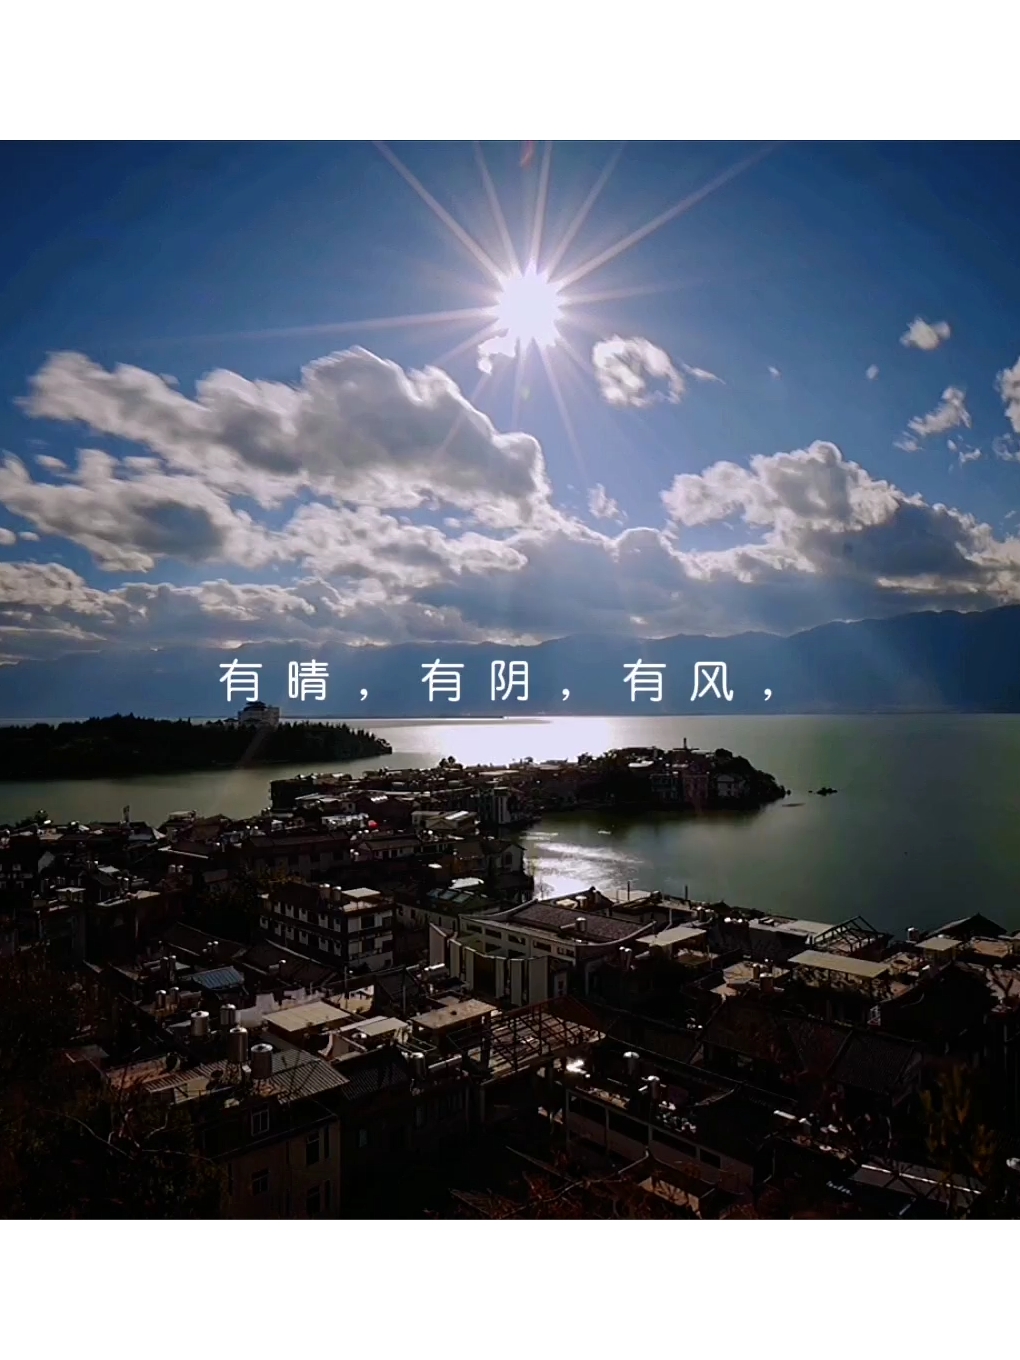 泸沽湖是真的美